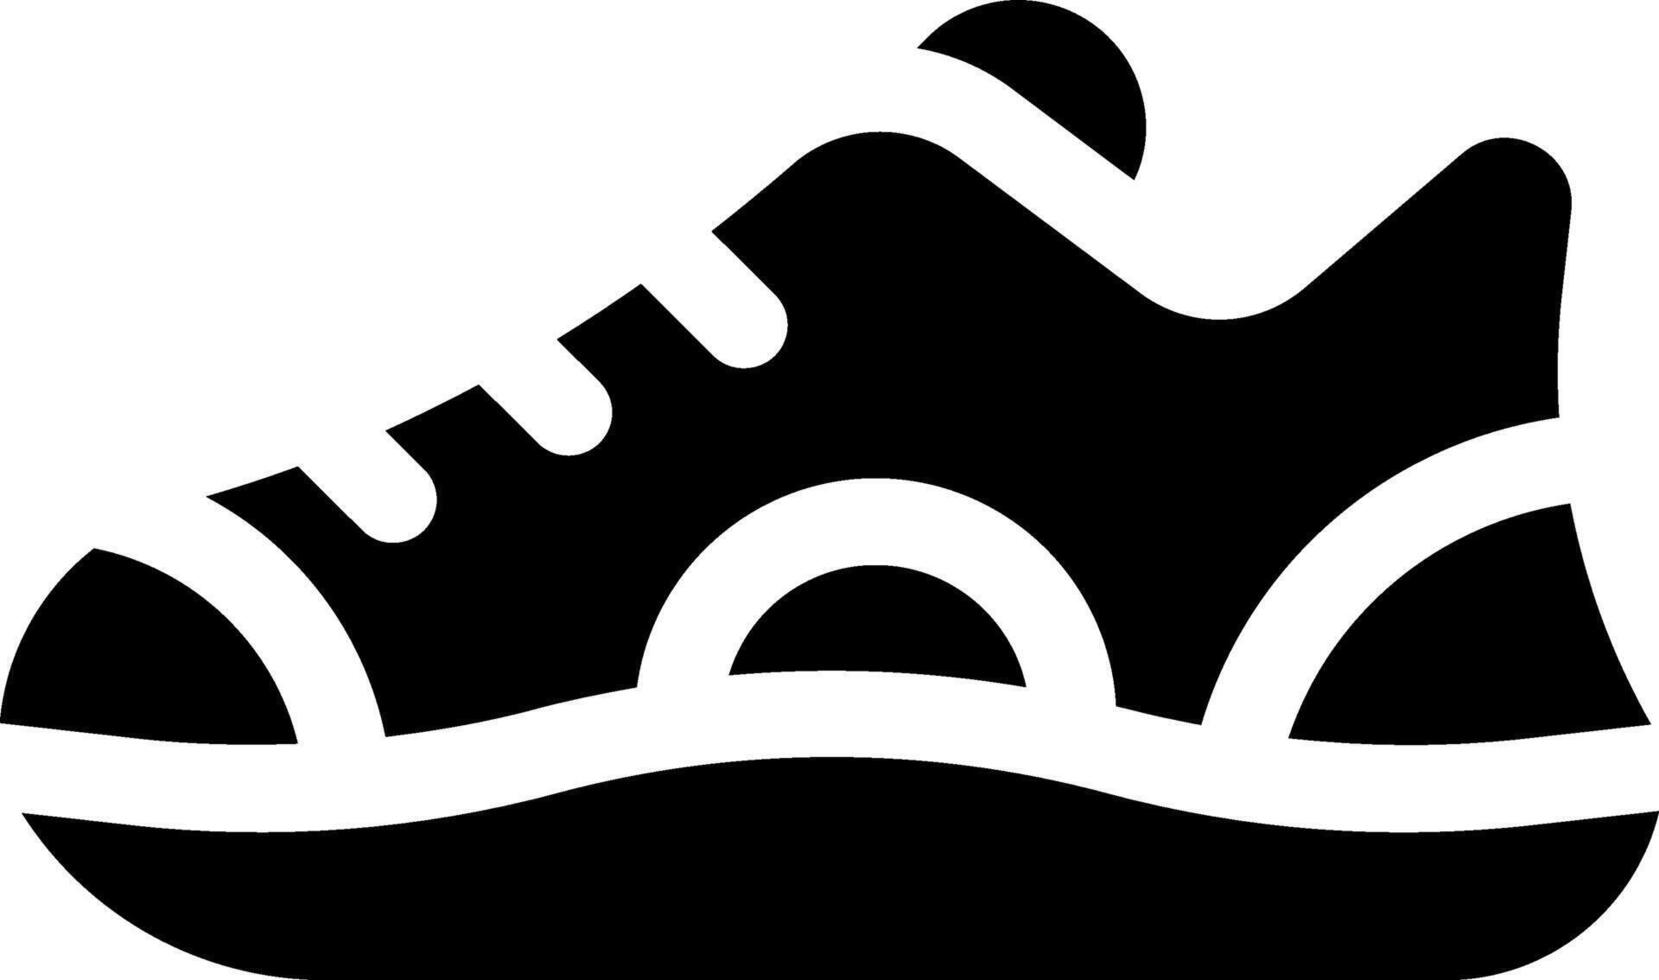 Questo icona o logo scarpe icona o altro dove esso spiega vario tipi di scarpe quello avere diverso usi, come come gli sport scarpe e altri o design applicazione Software vettore